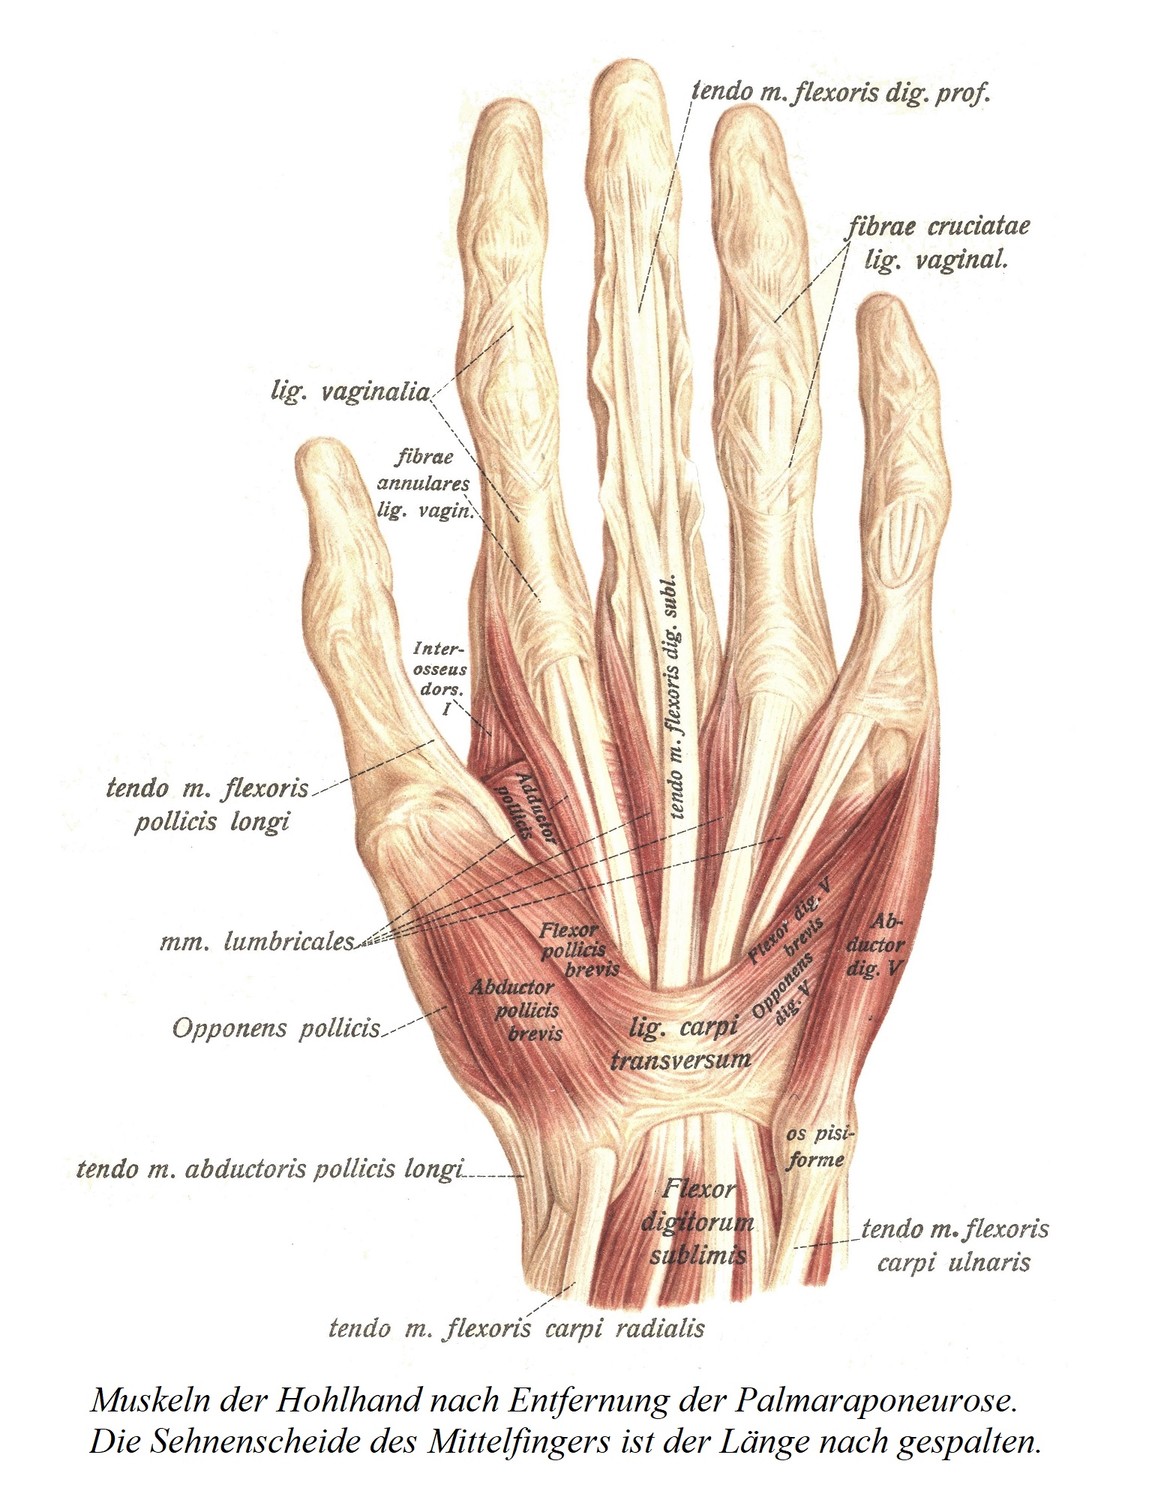 Мышцы ладони после удаления ладонного апоневроза. Сухожильное влагалище среднего пальца расщепляется вдоль.